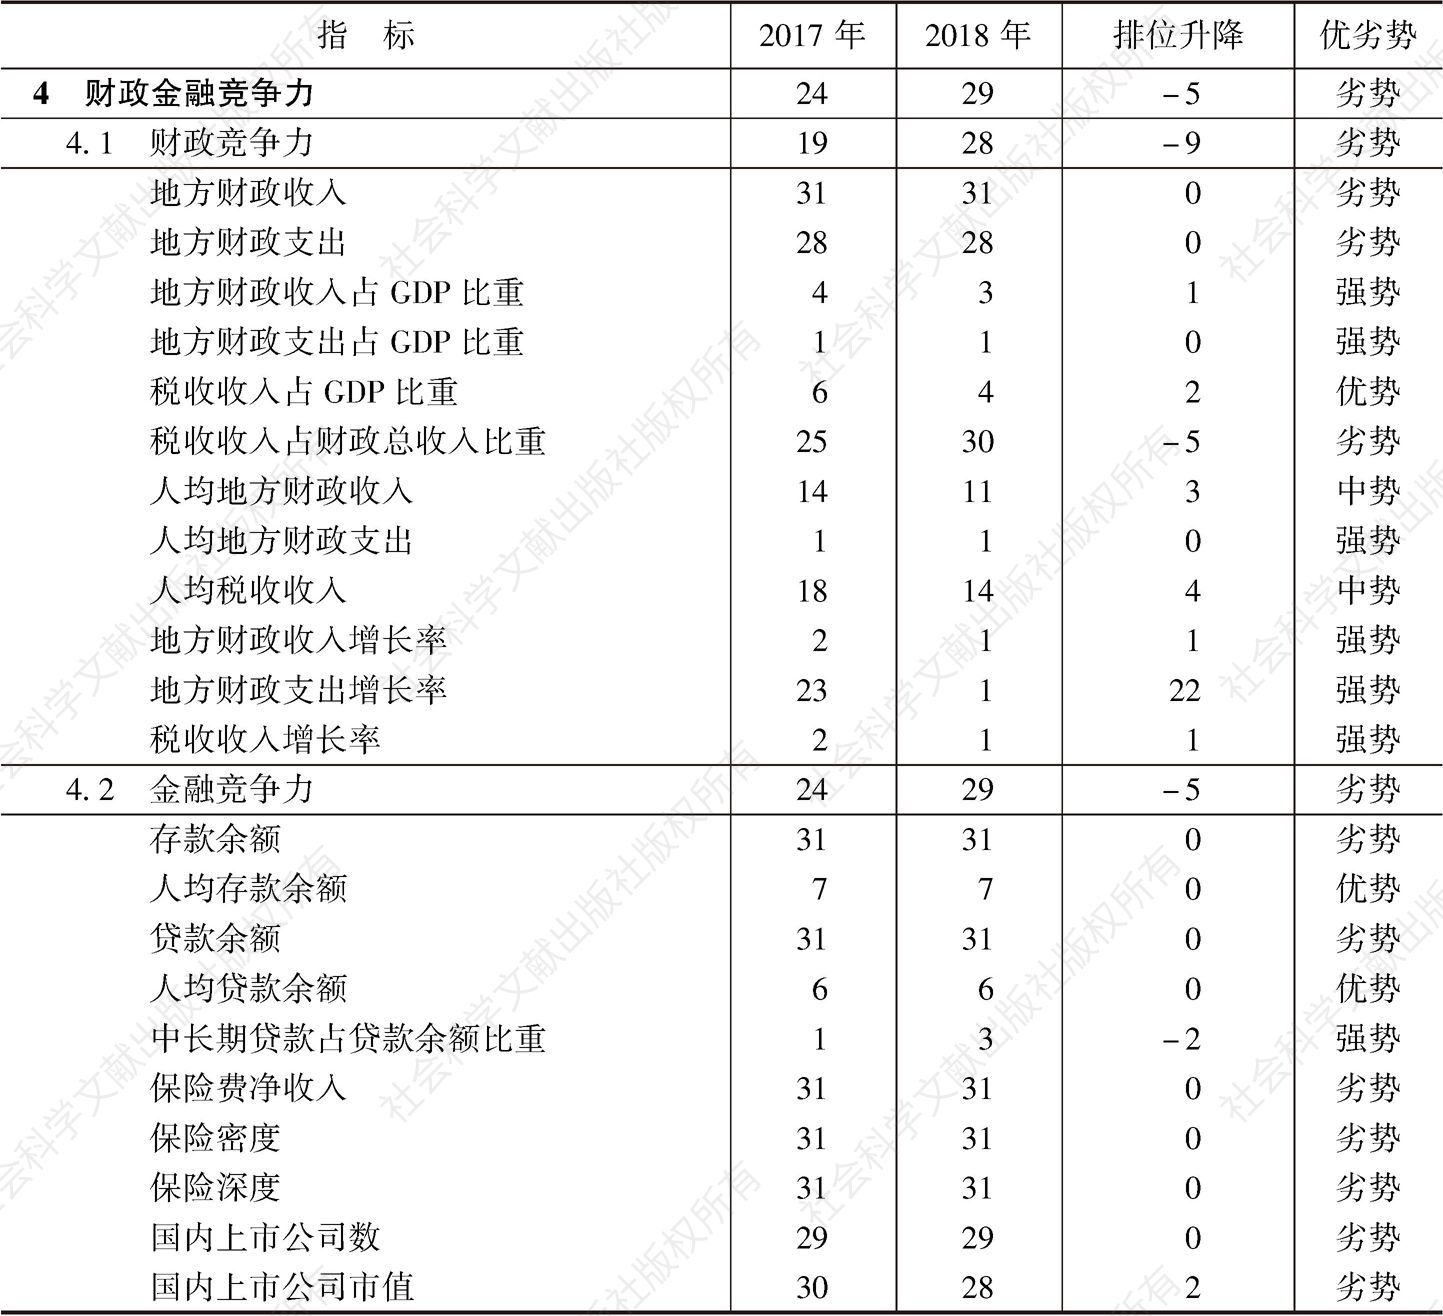 表26-8 2017～2018年西藏自治区财政金融竞争力指标组排位及变化趋势